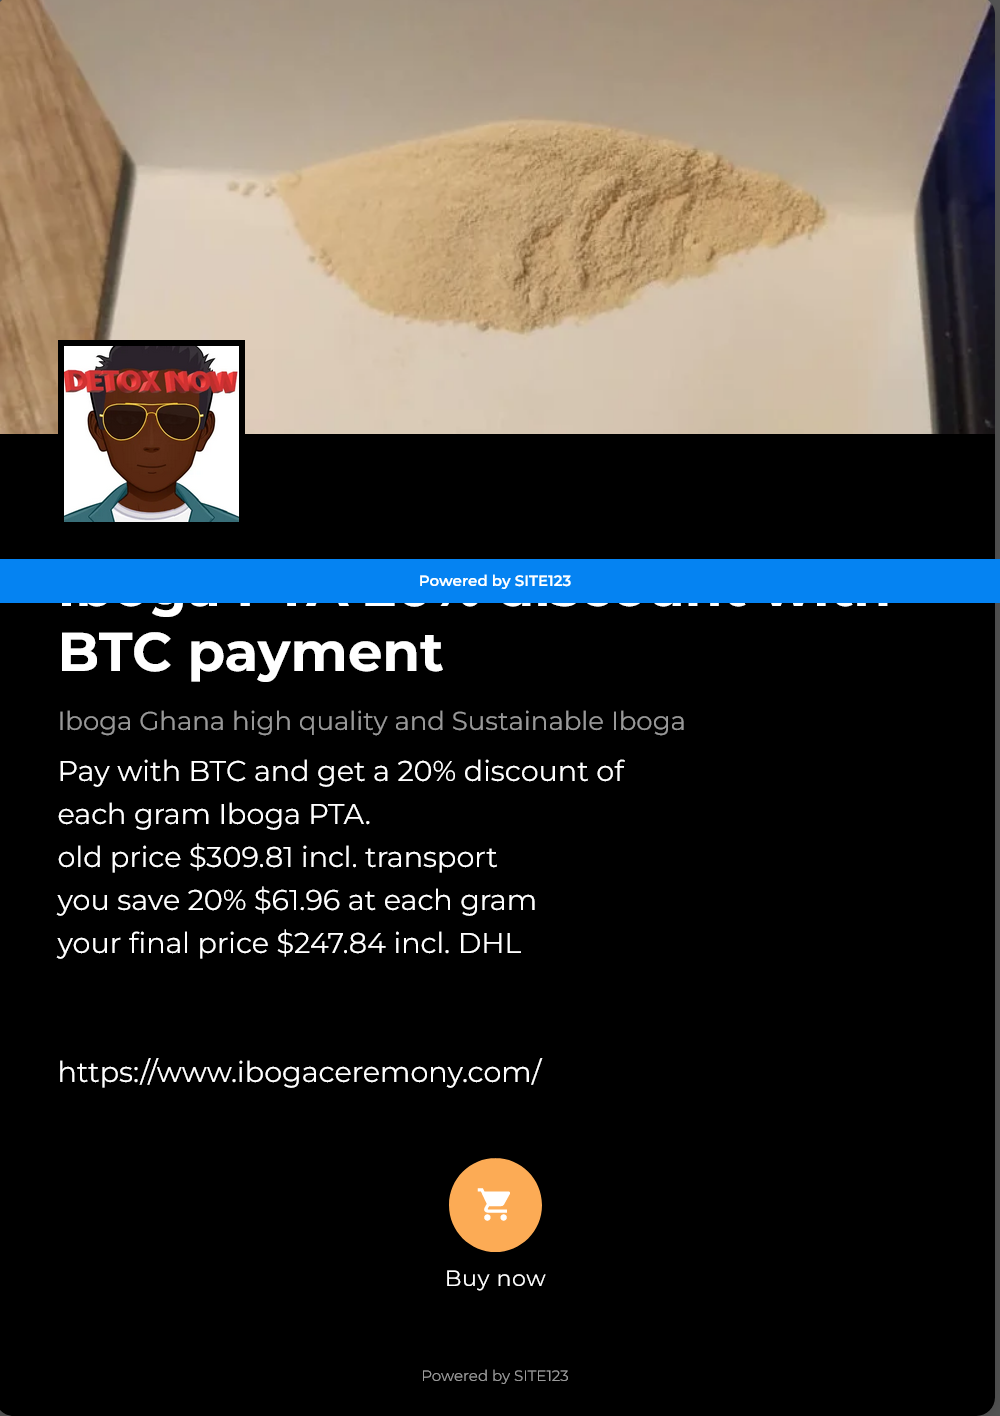 Iboga PTA 20% discount with BTC payment